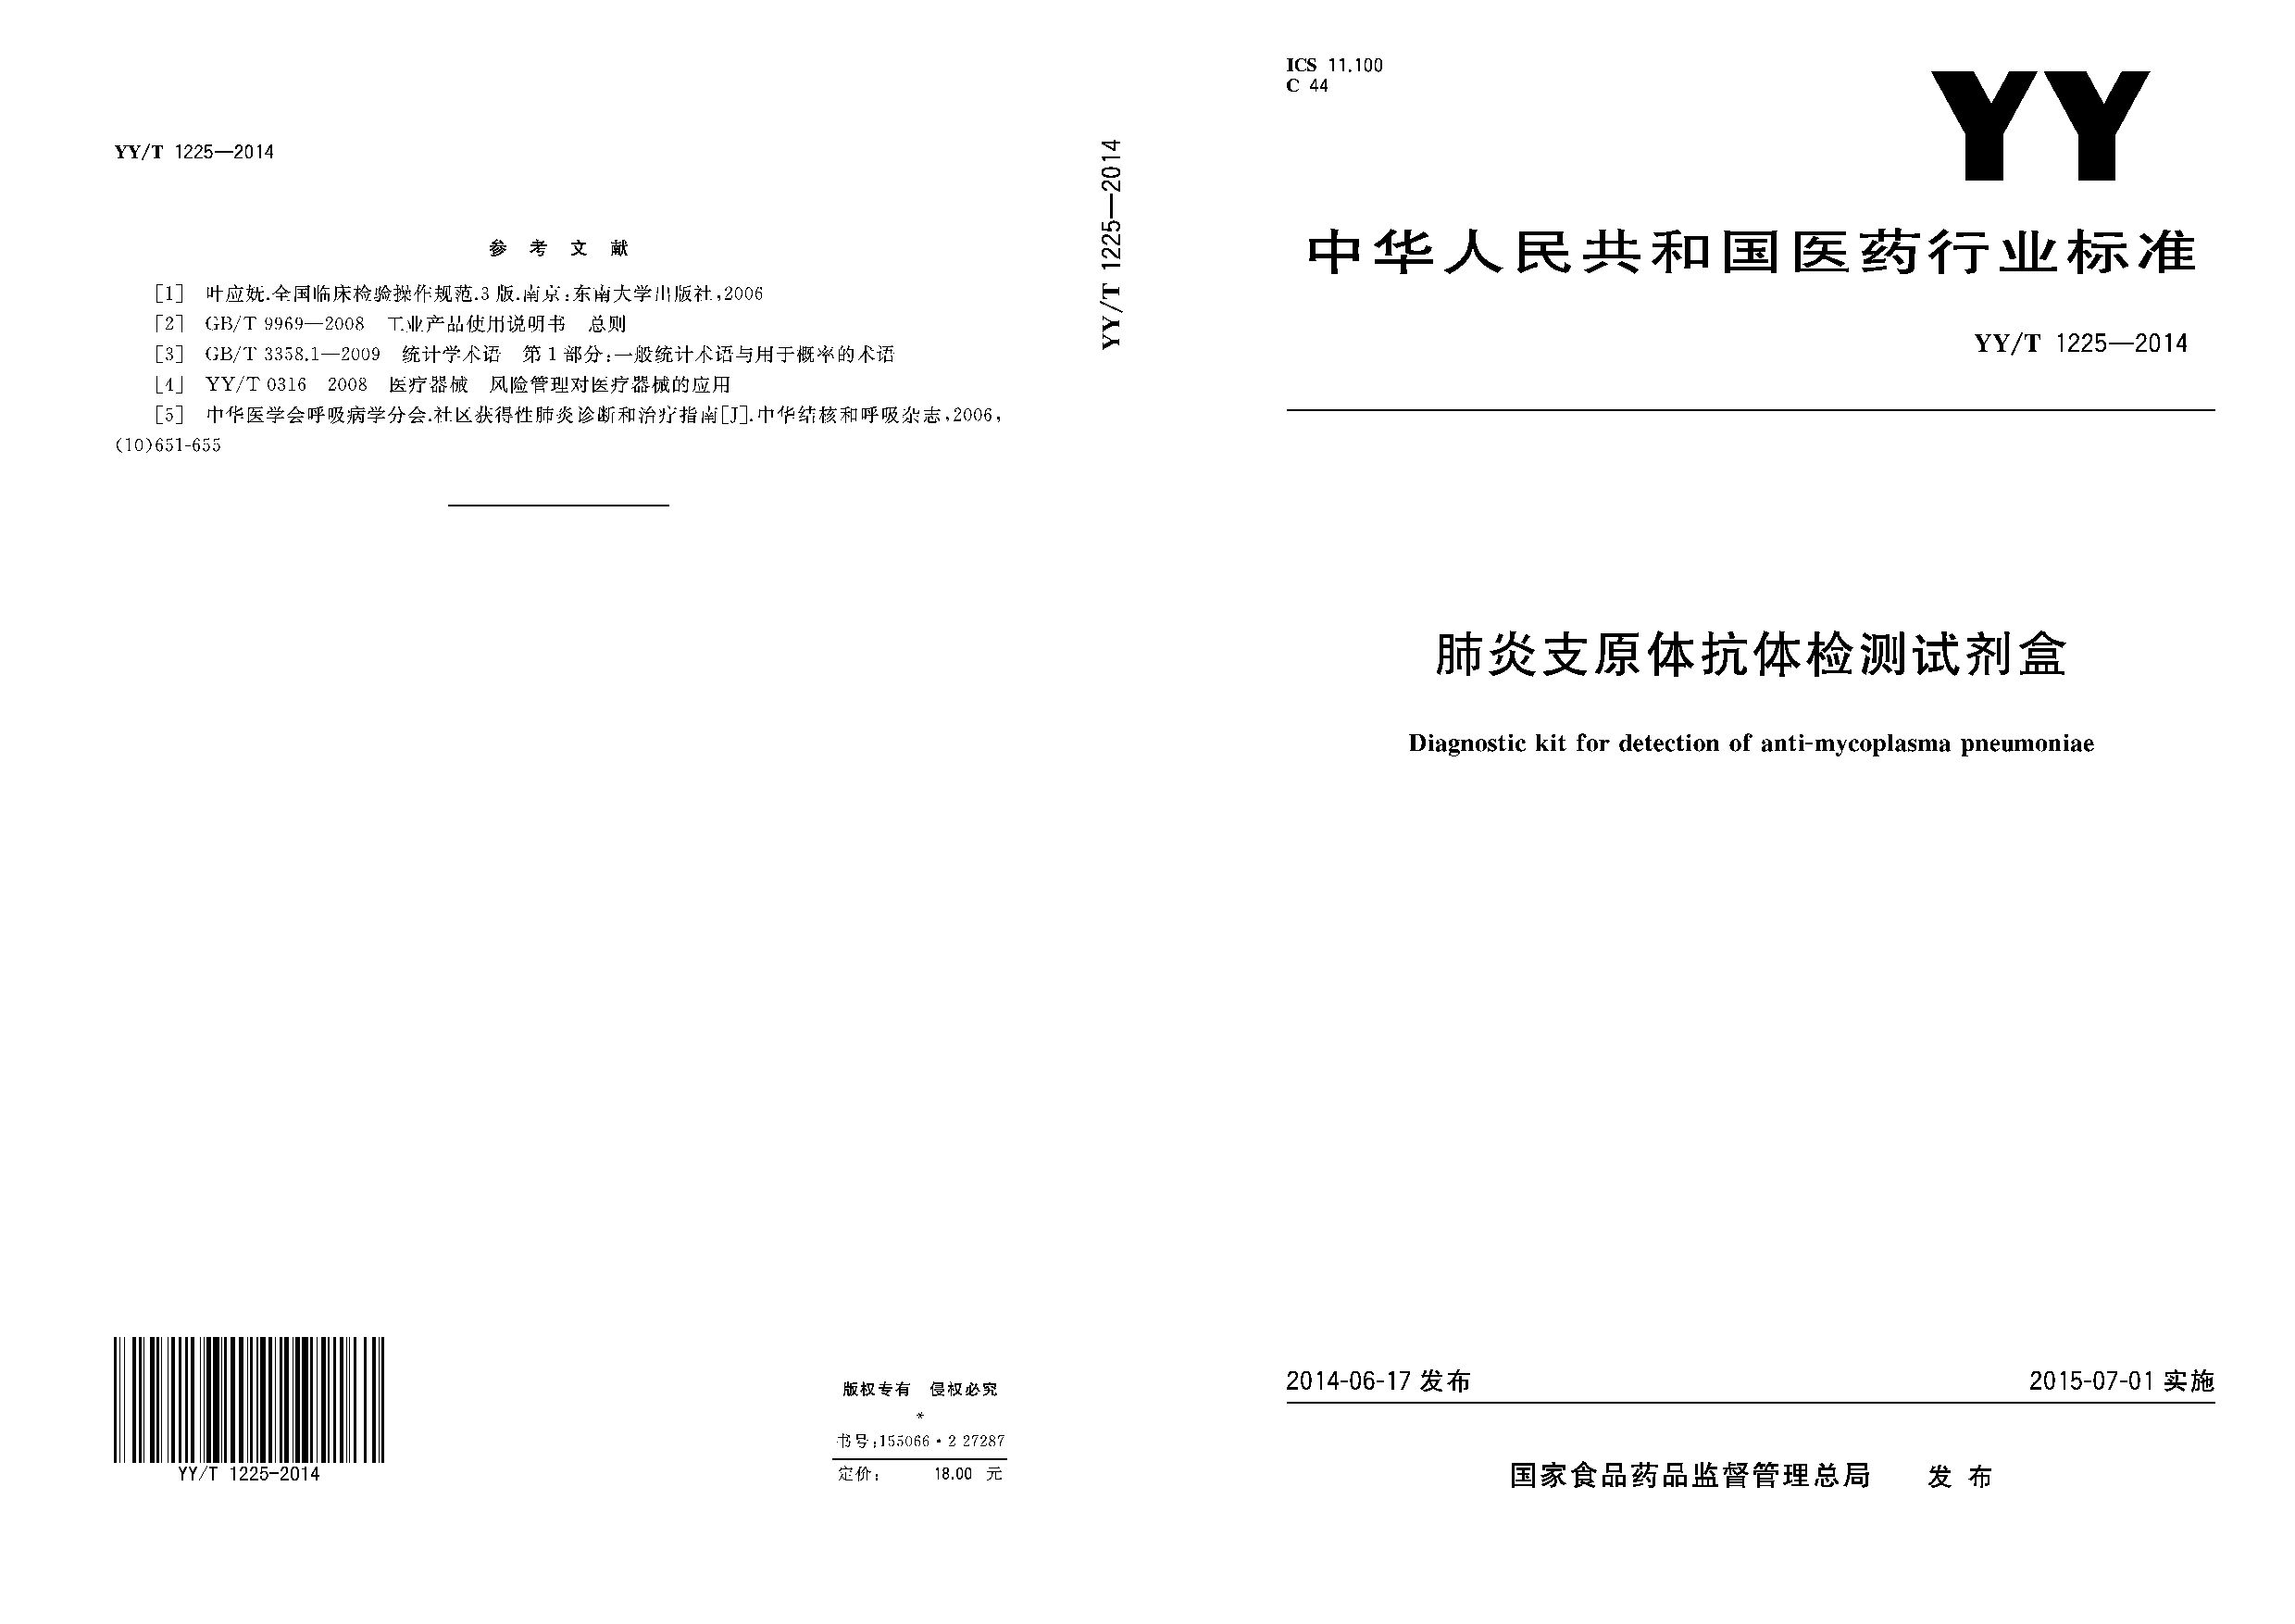 YY/T 1225-2014封面图